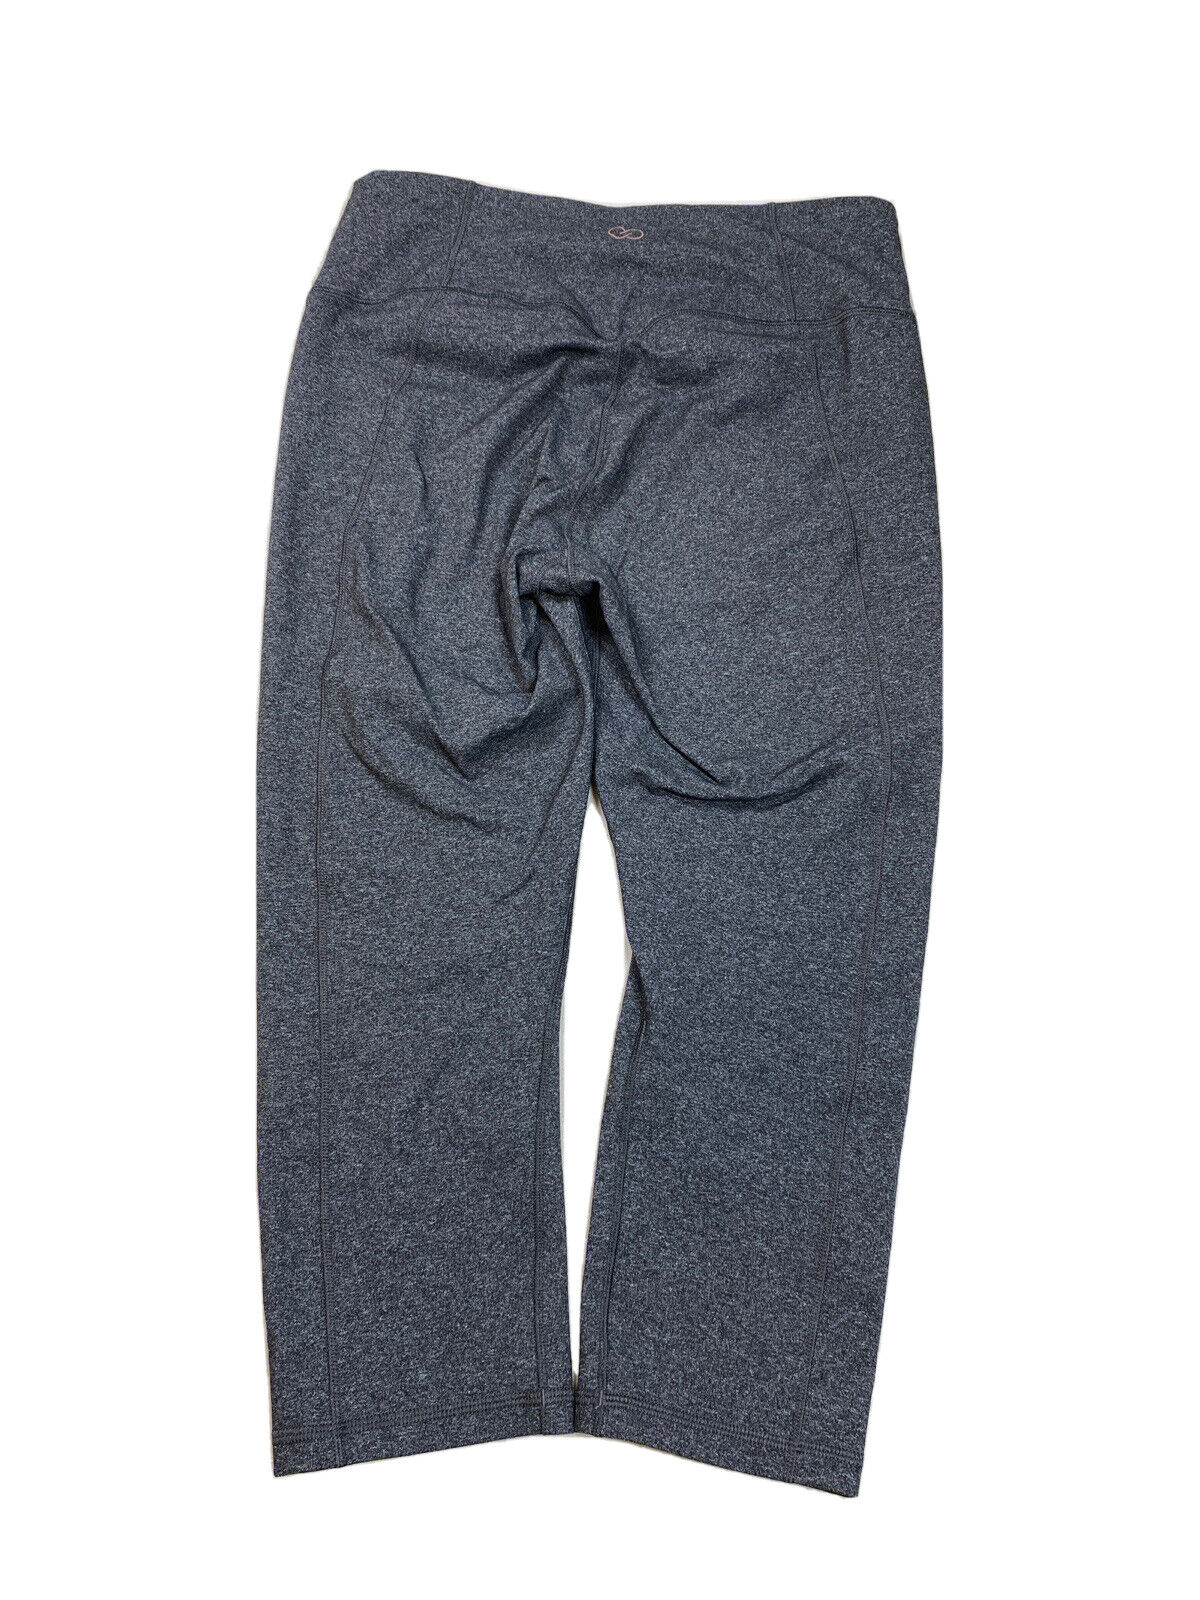 Calia Leggings deportivos cortos de color gris jaspeado para mujer - L